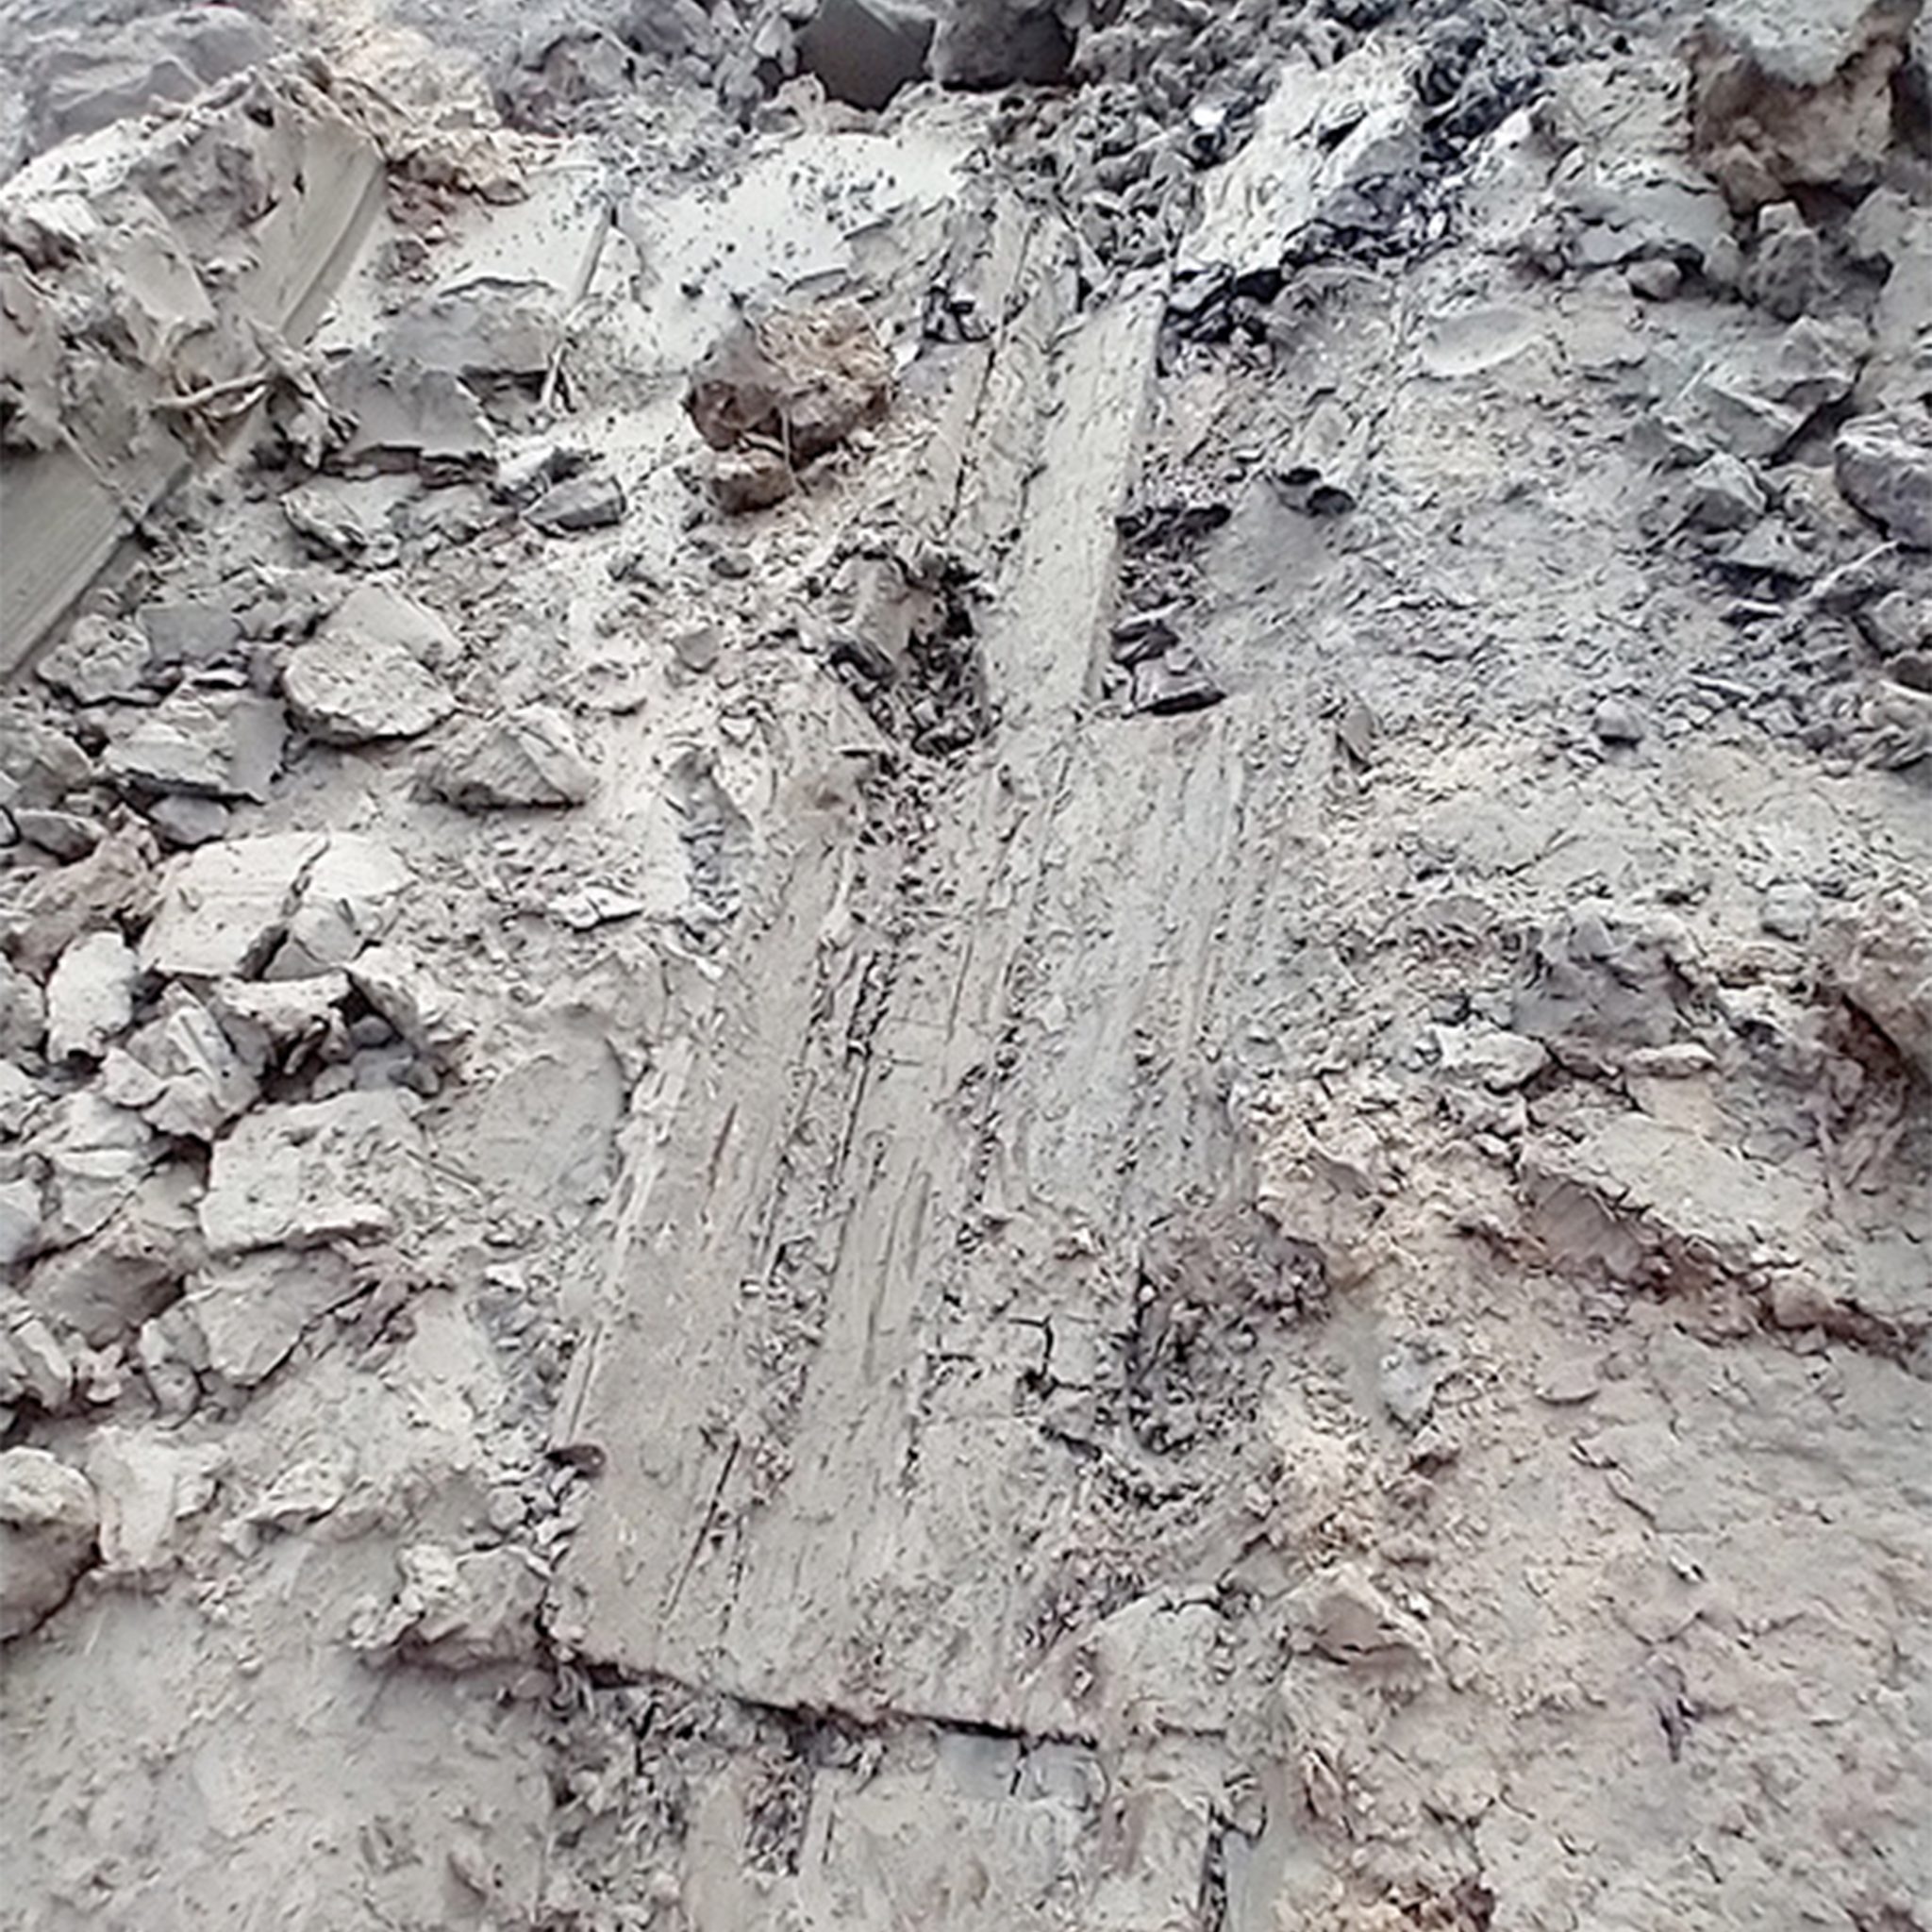 De eikenhouten planken van de Romeinse platbodem die tijdens de graafwerkzaamheden werden gevonden. (Foto Provincie Zuid-Holland)